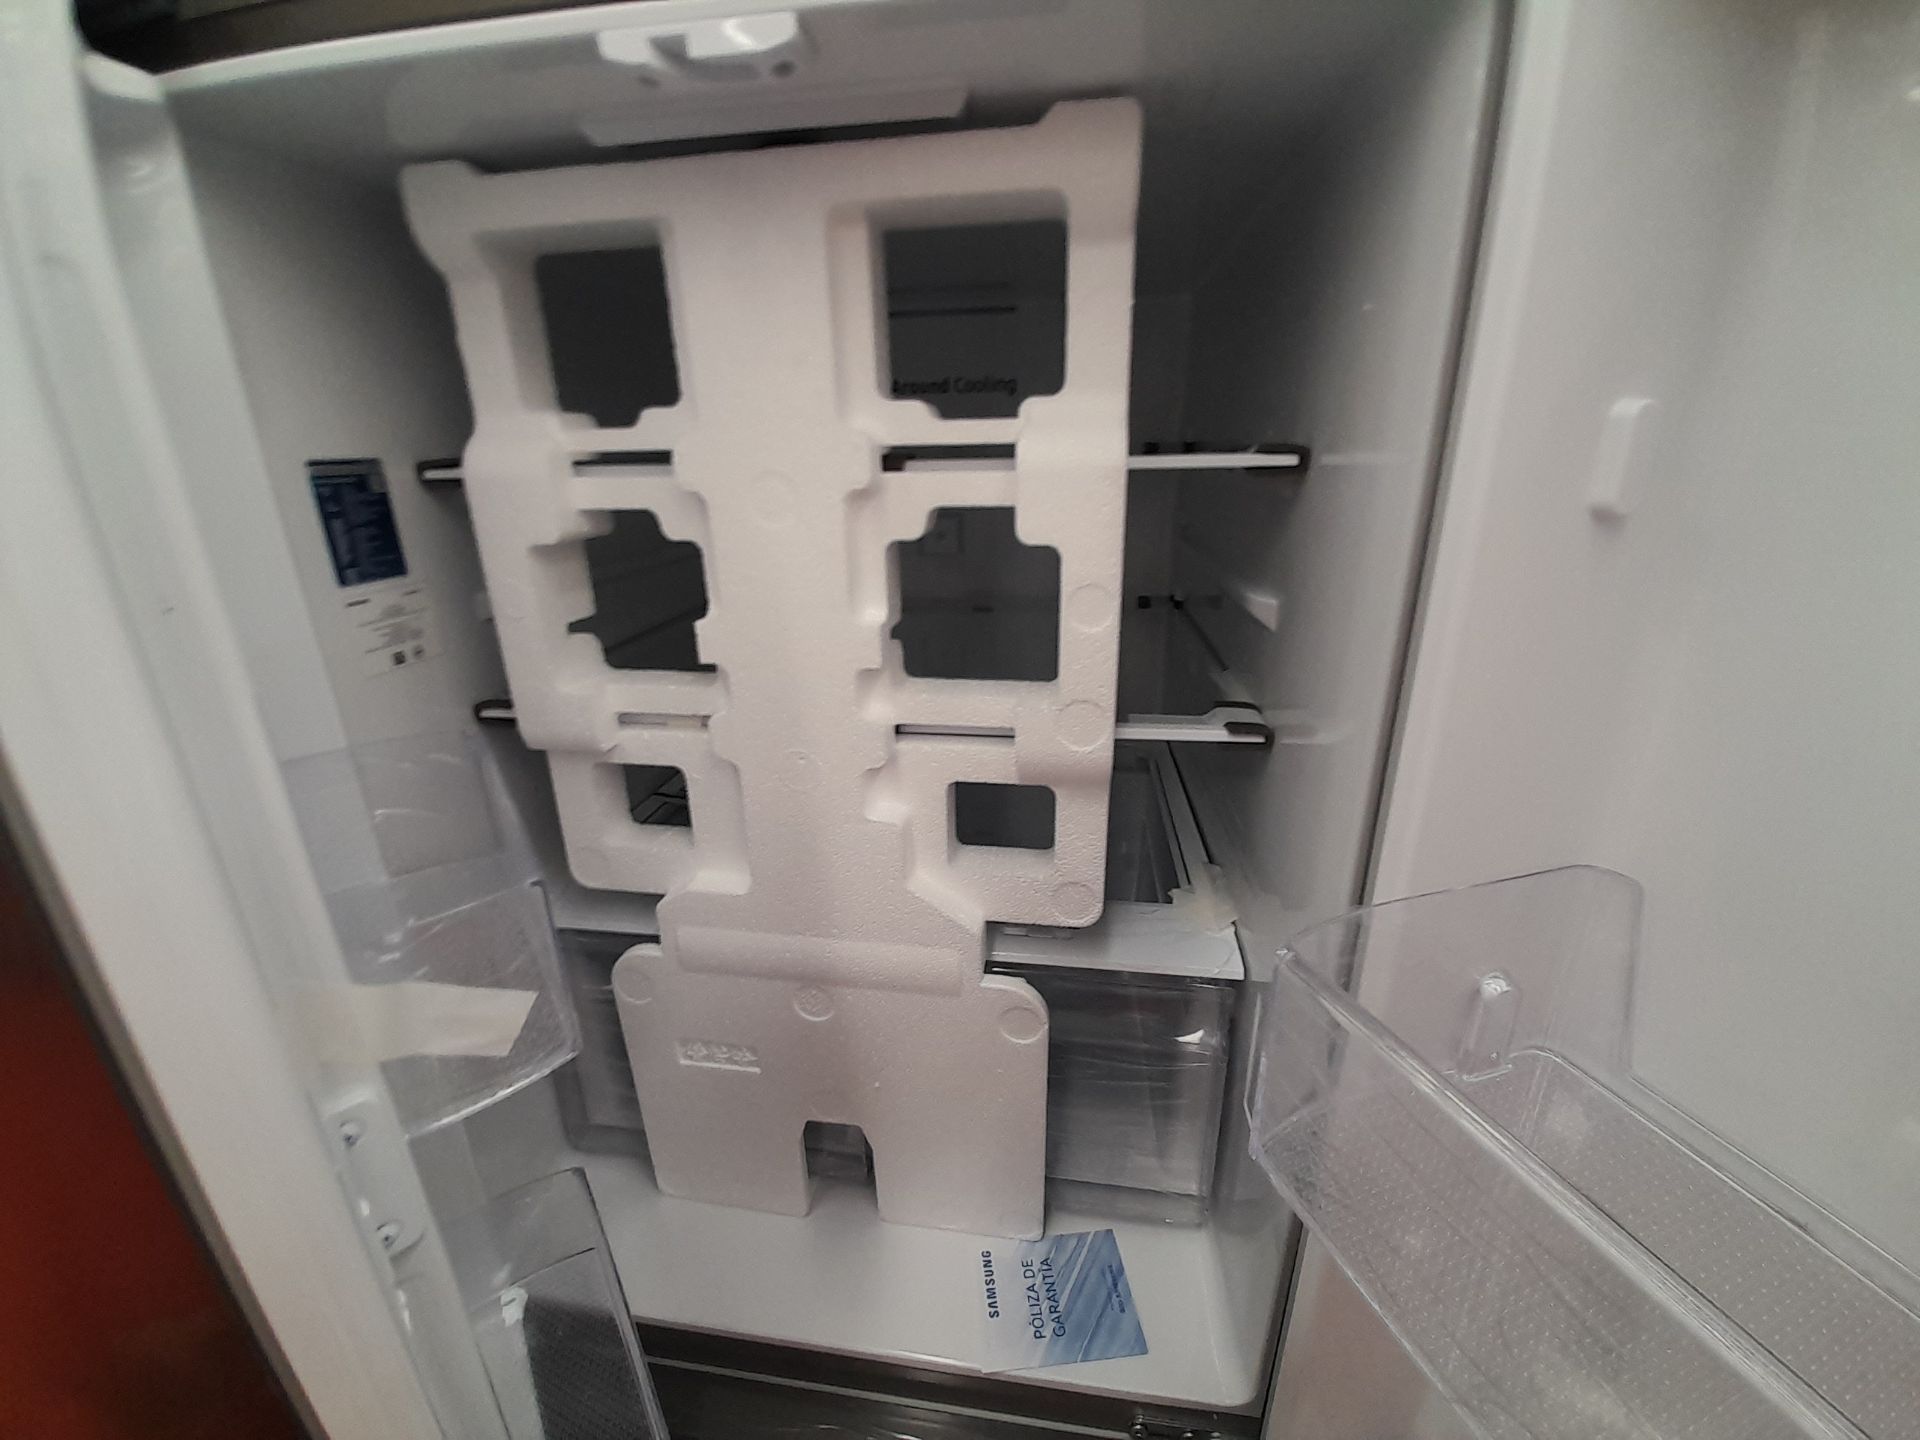 (Equipo nuevo) 1 Refrigerador Marca SAMSUNG, Modelo RF22A4010S9, Serie 00665B, Color GRIS. (Nuevo, - Image 4 of 5